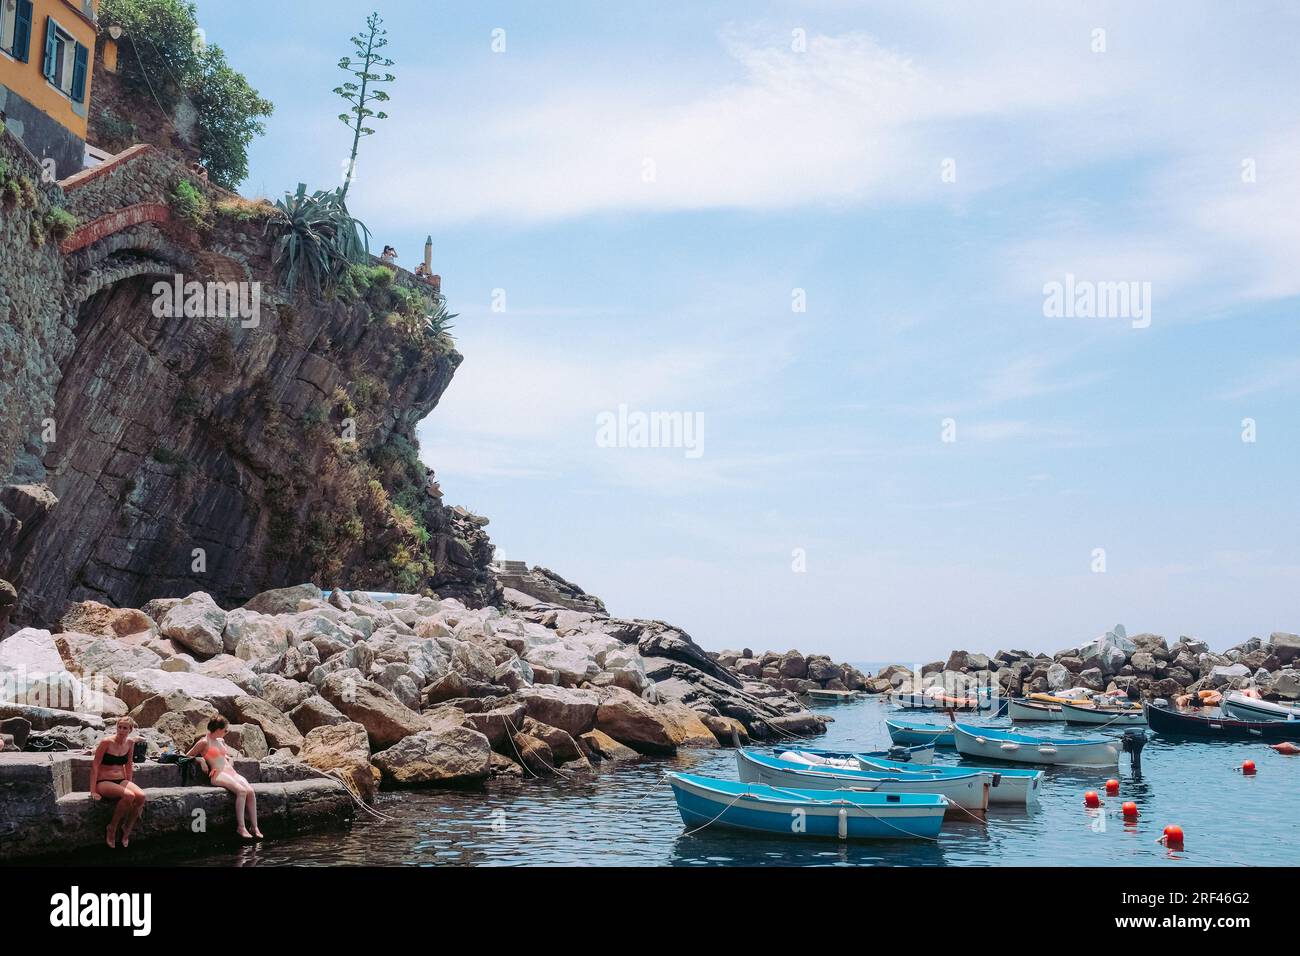 Cinque Terre, Italie - quai à Riomaggiore avec des bateaux et des touristes en maillots de bain. Ville balnéaire sur la Riviera italienne. Les gens sur une plage rocheuse sous le soleil Banque D'Images